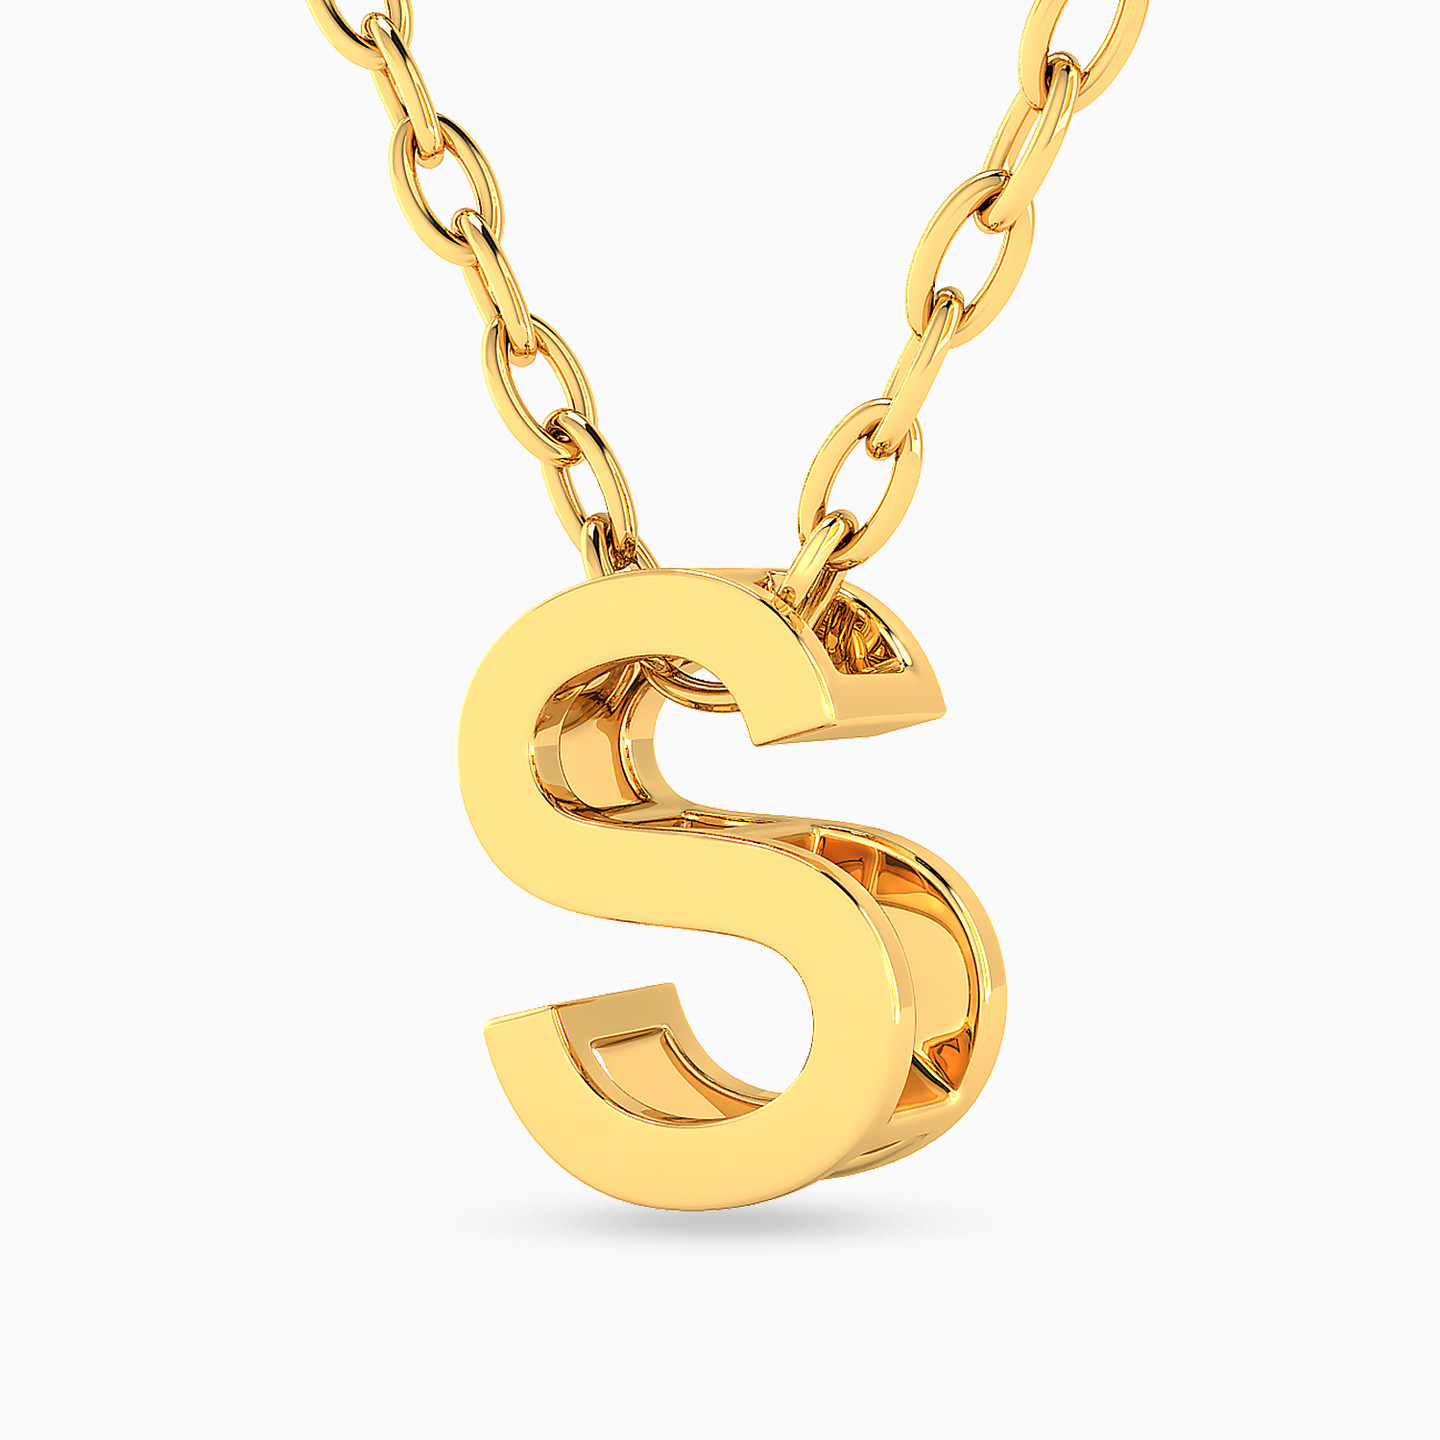 18K Gold Pendant Necklace - 2